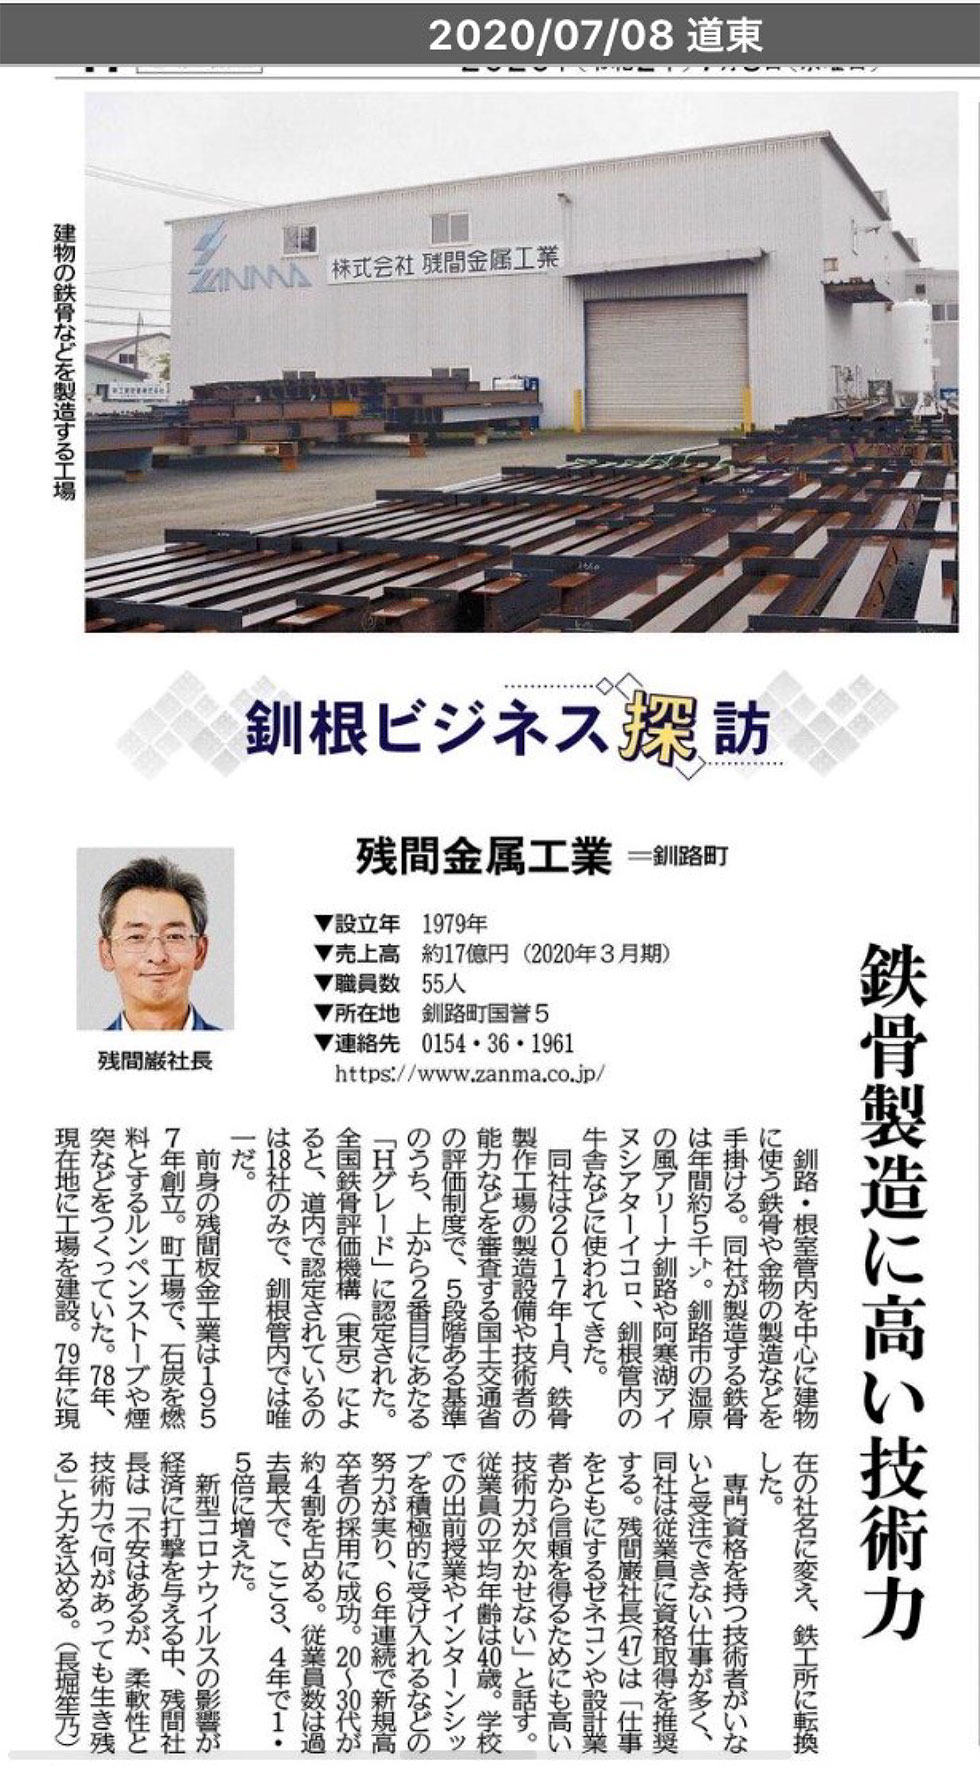 北海道新聞｢釧根ビジネス探訪｣で紹介されました!